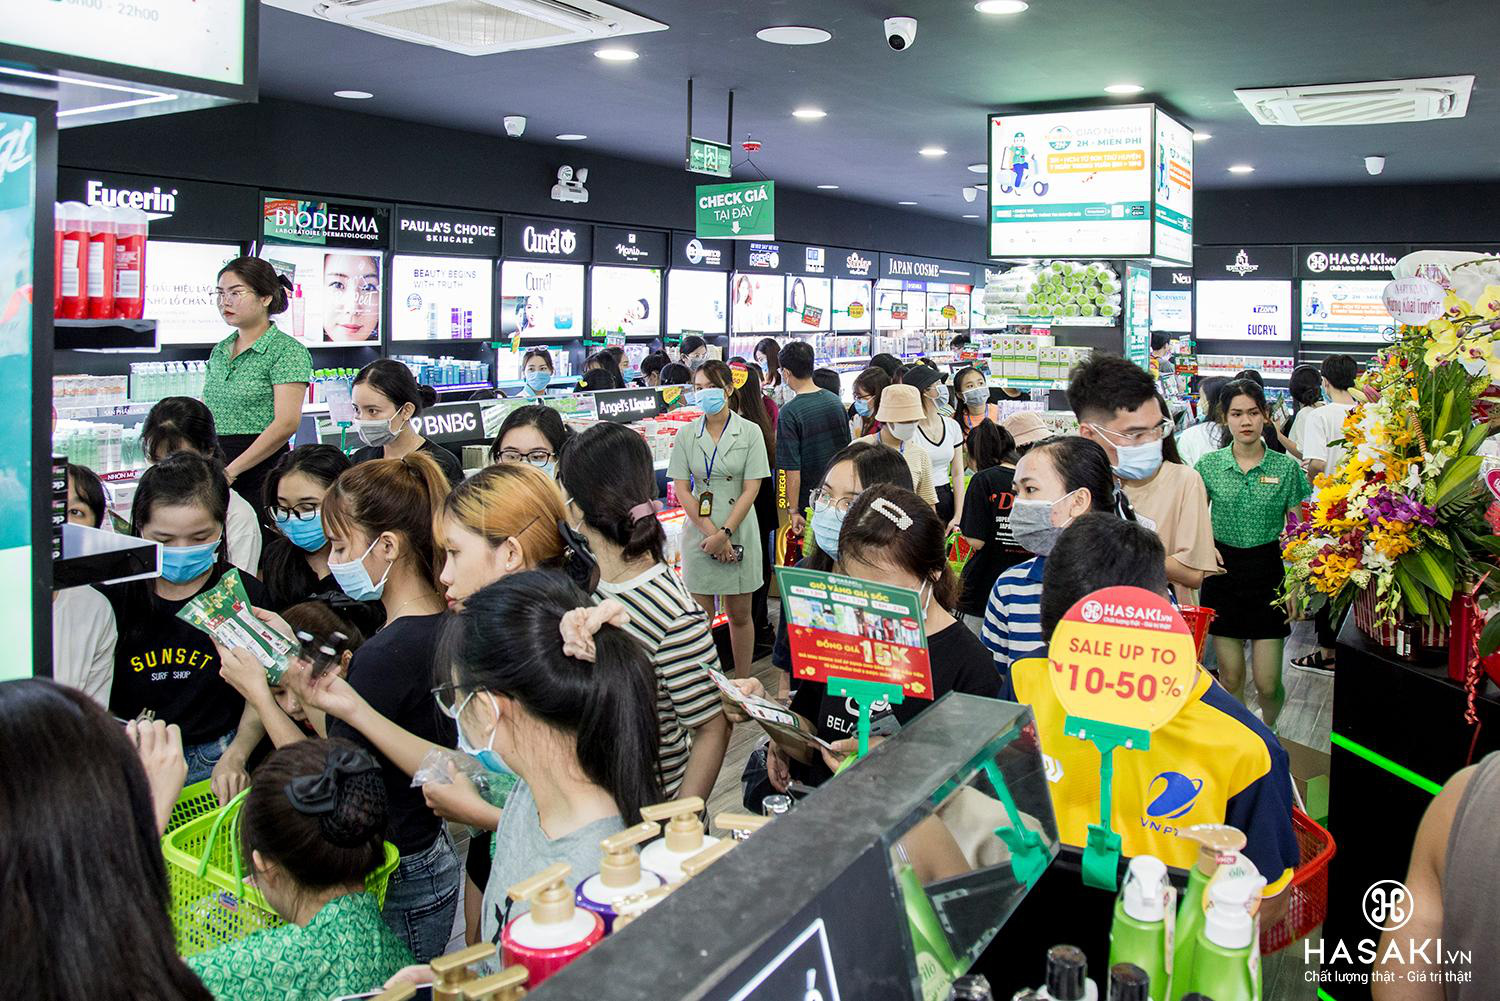 Hàng ngàn tín đồ làm đẹp hào hứng với không gian mua sắm xịn sò, cái gì cũng có ở Hasaki chi nhánh 15 - Ảnh 4.